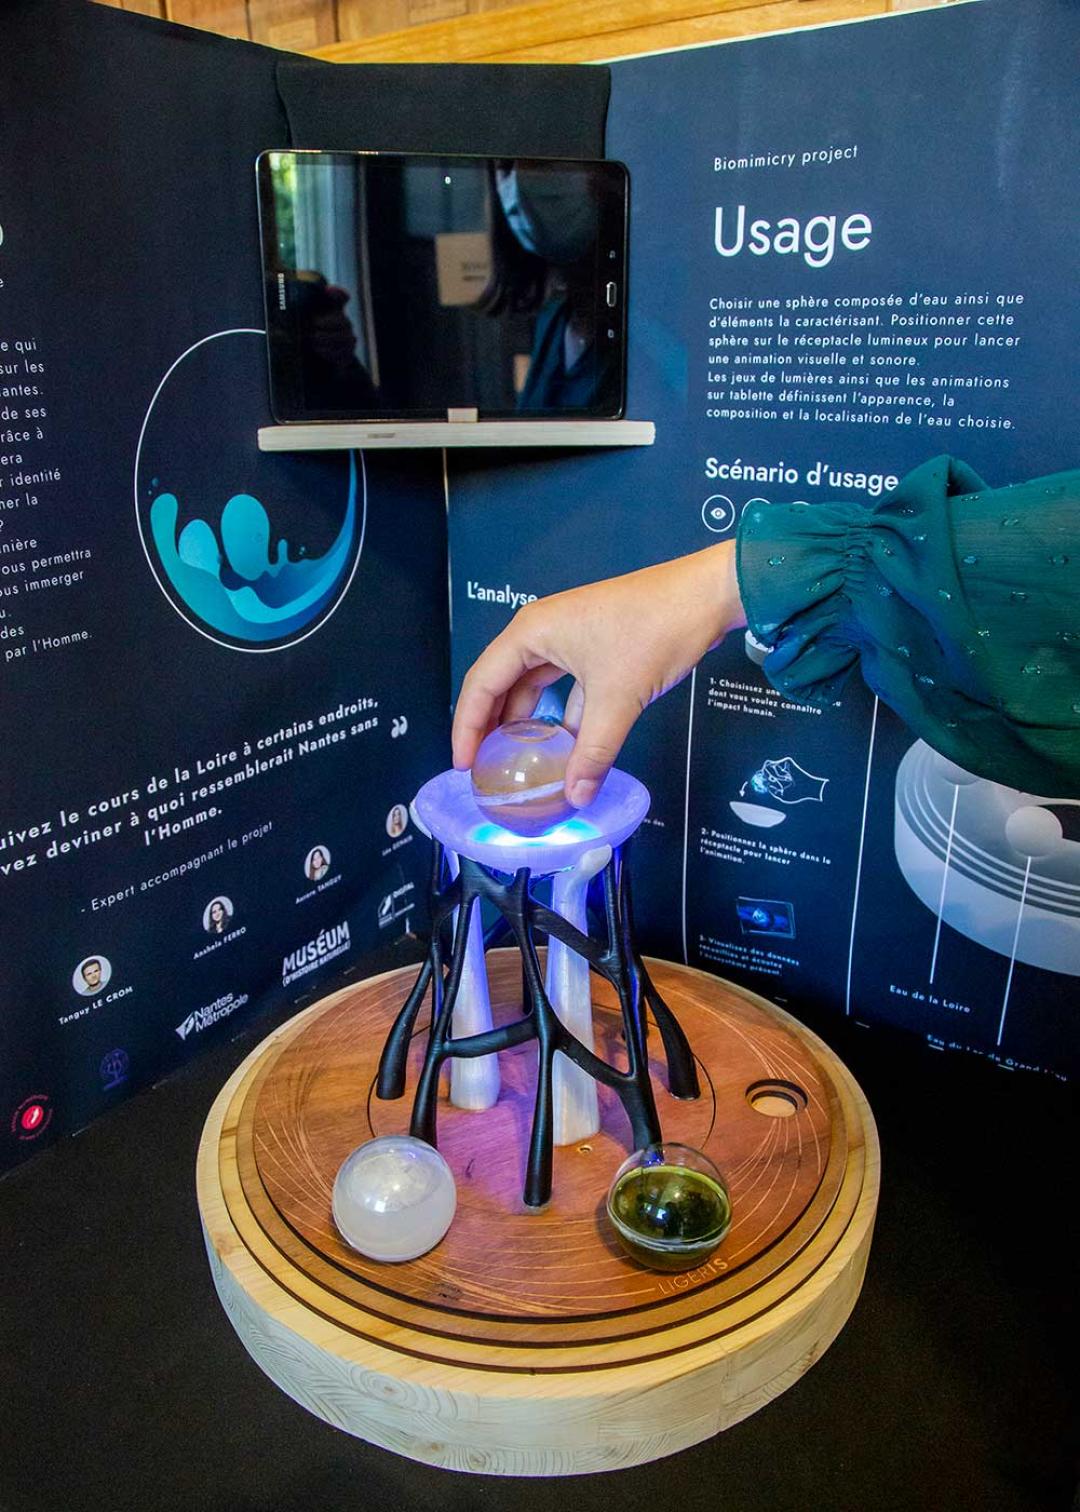 Ligeris projet BiomimiCry exposé au Muséum de Nantes